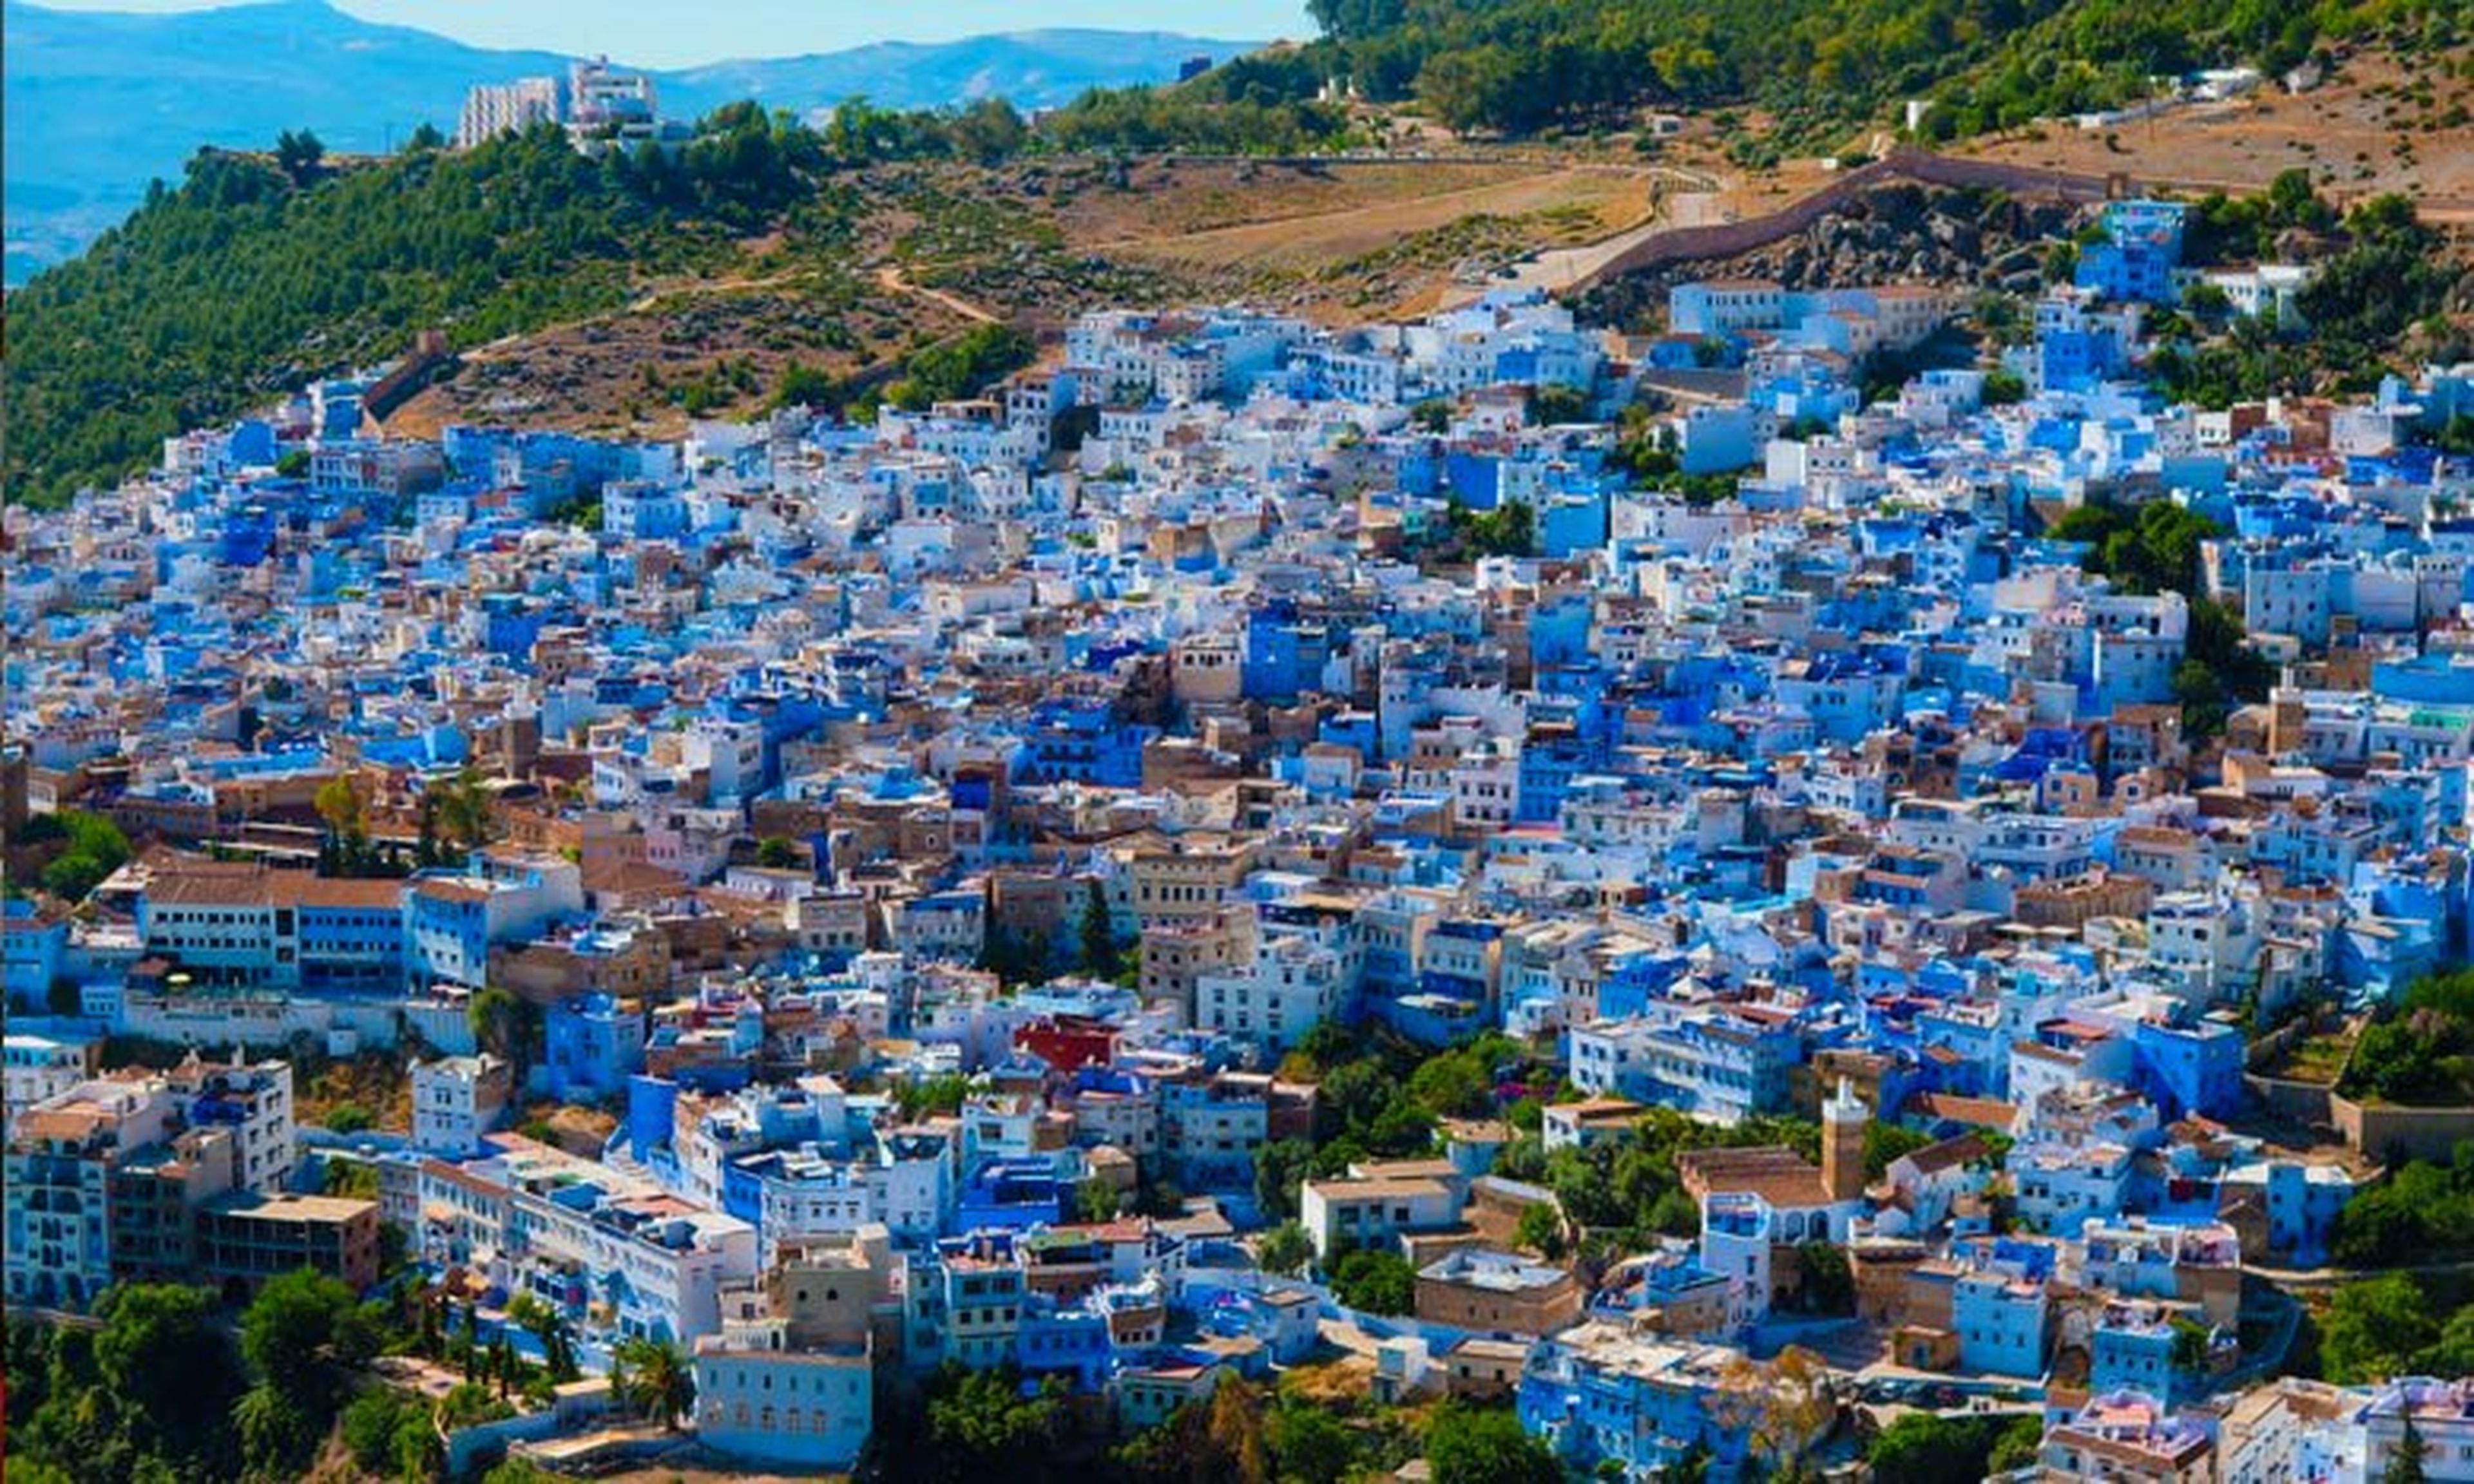 El hermoso pueblo marroquí donde el azul es el rey